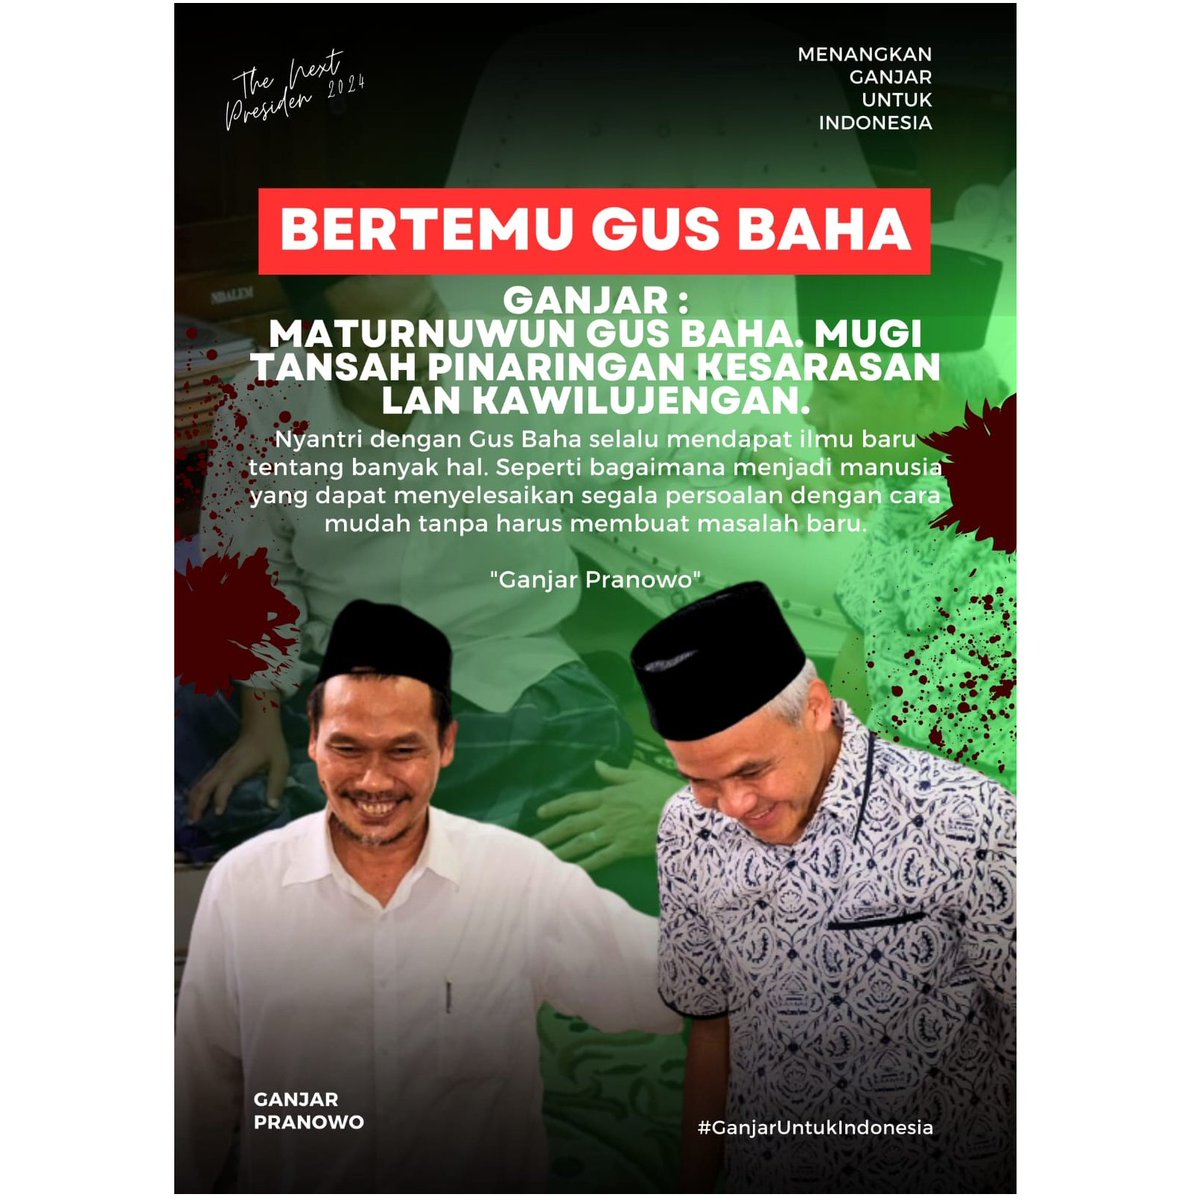 Ganjar Pranowo bertemu dengan Gus Baha
#GanjarUntukIndonesia
#GanjaranApp